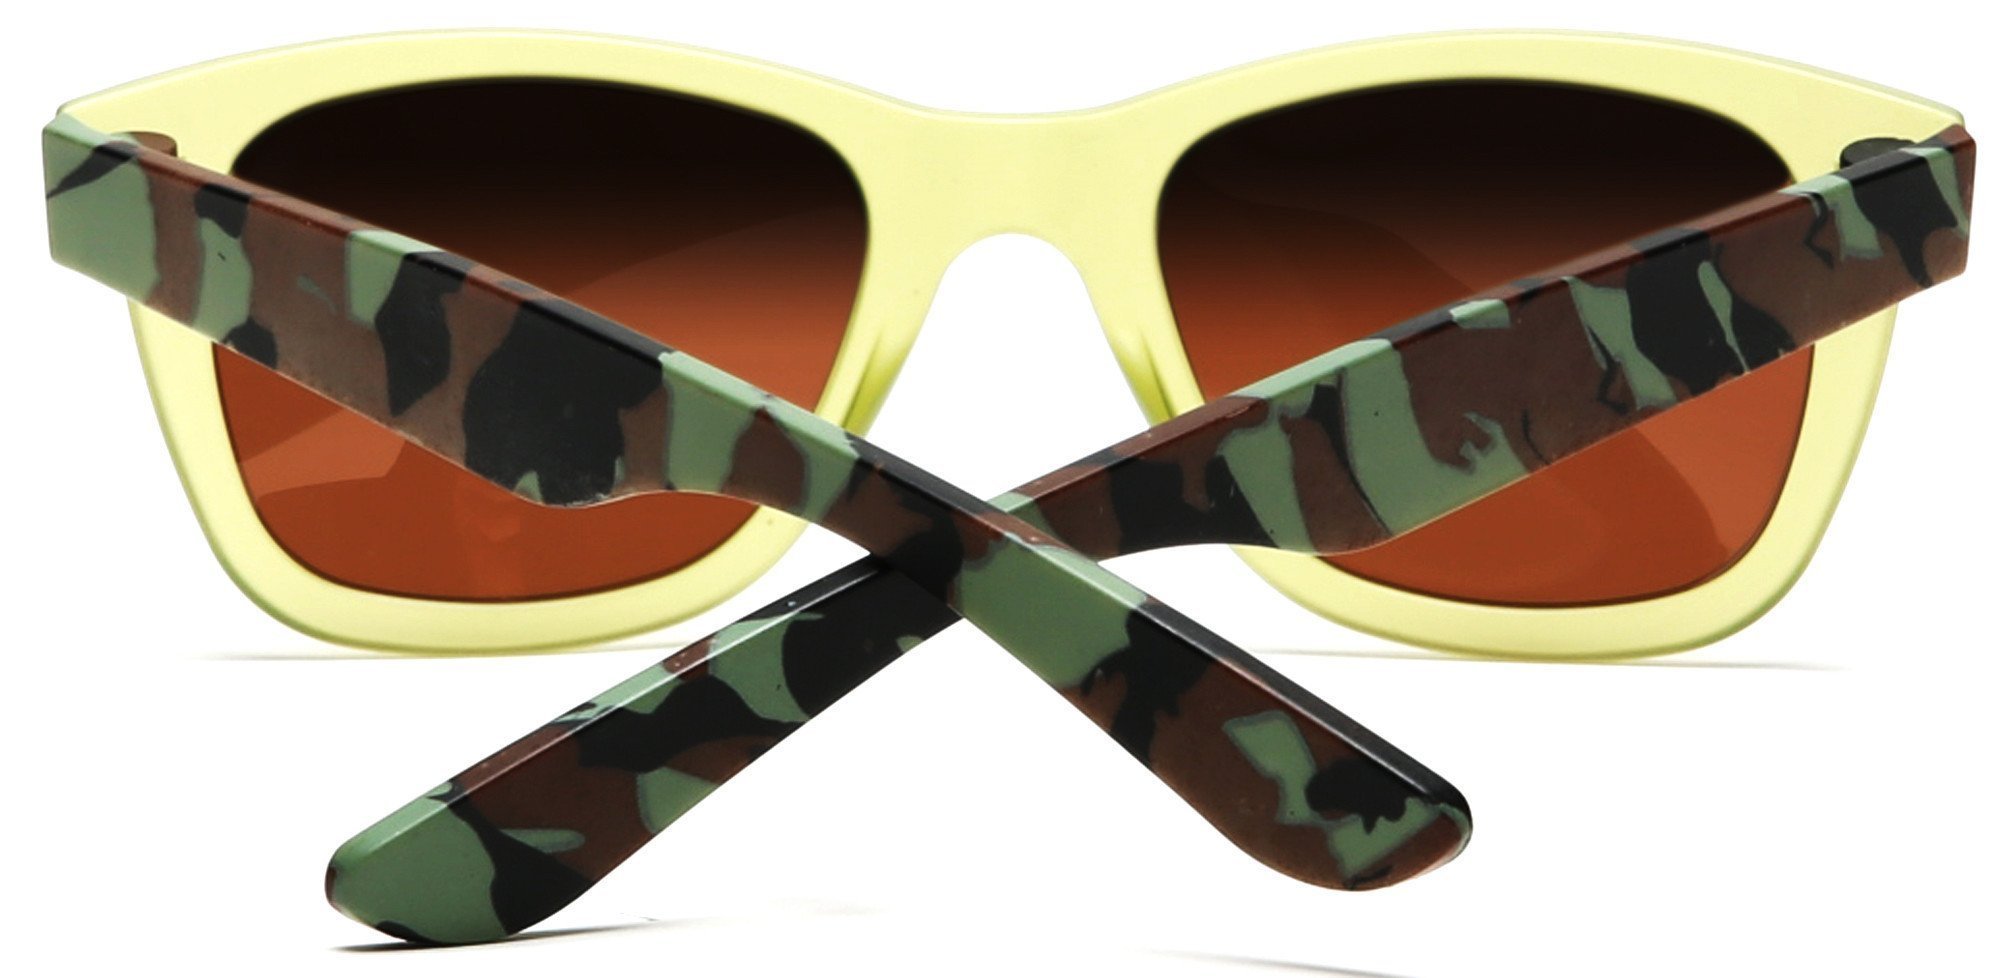 Valencia Polarized Horn Rimmed Sunglasses TR90 Unbreakable Construction Olive-Samba Shades